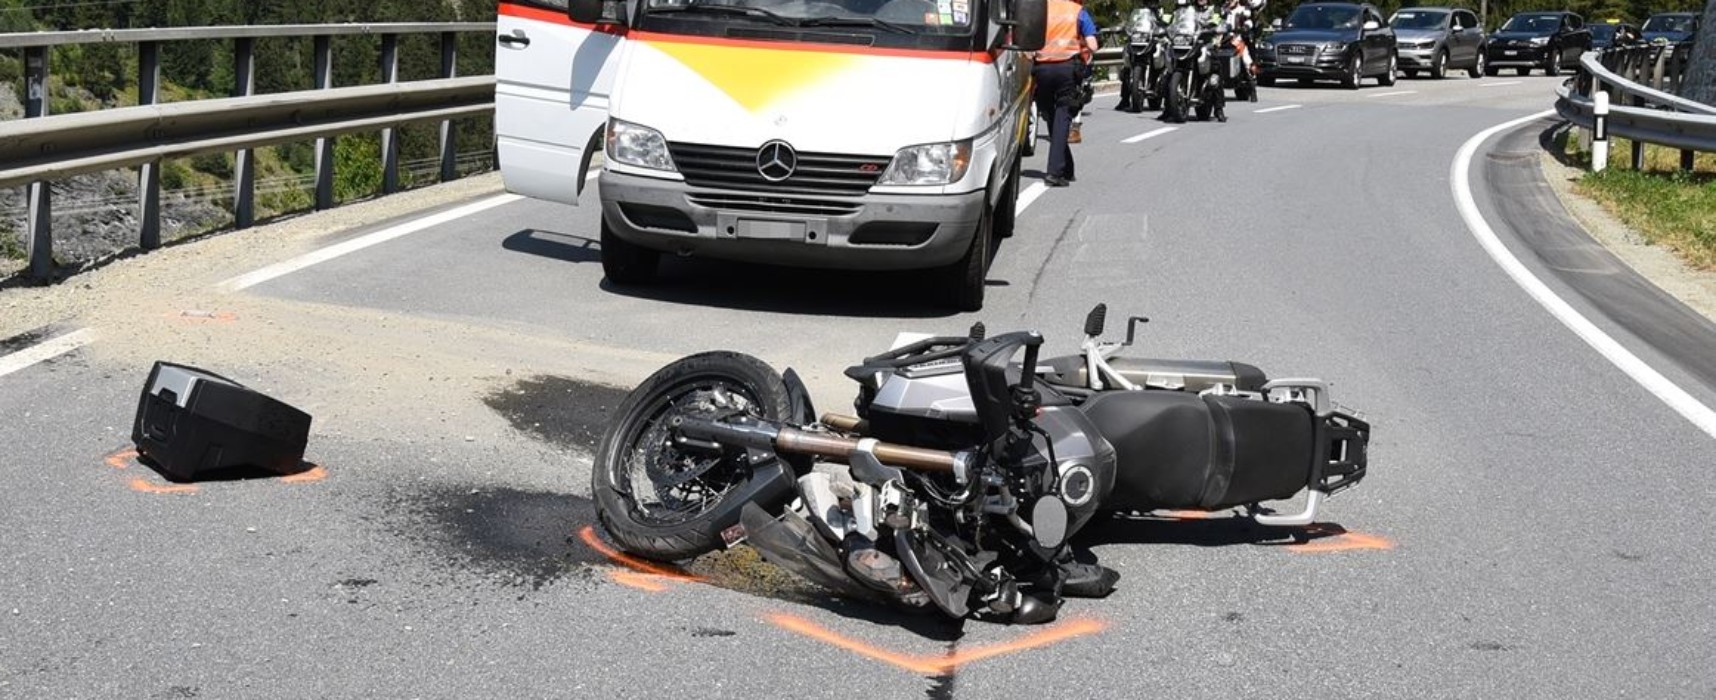 Motorrad-Unfall auf der Schinstraße